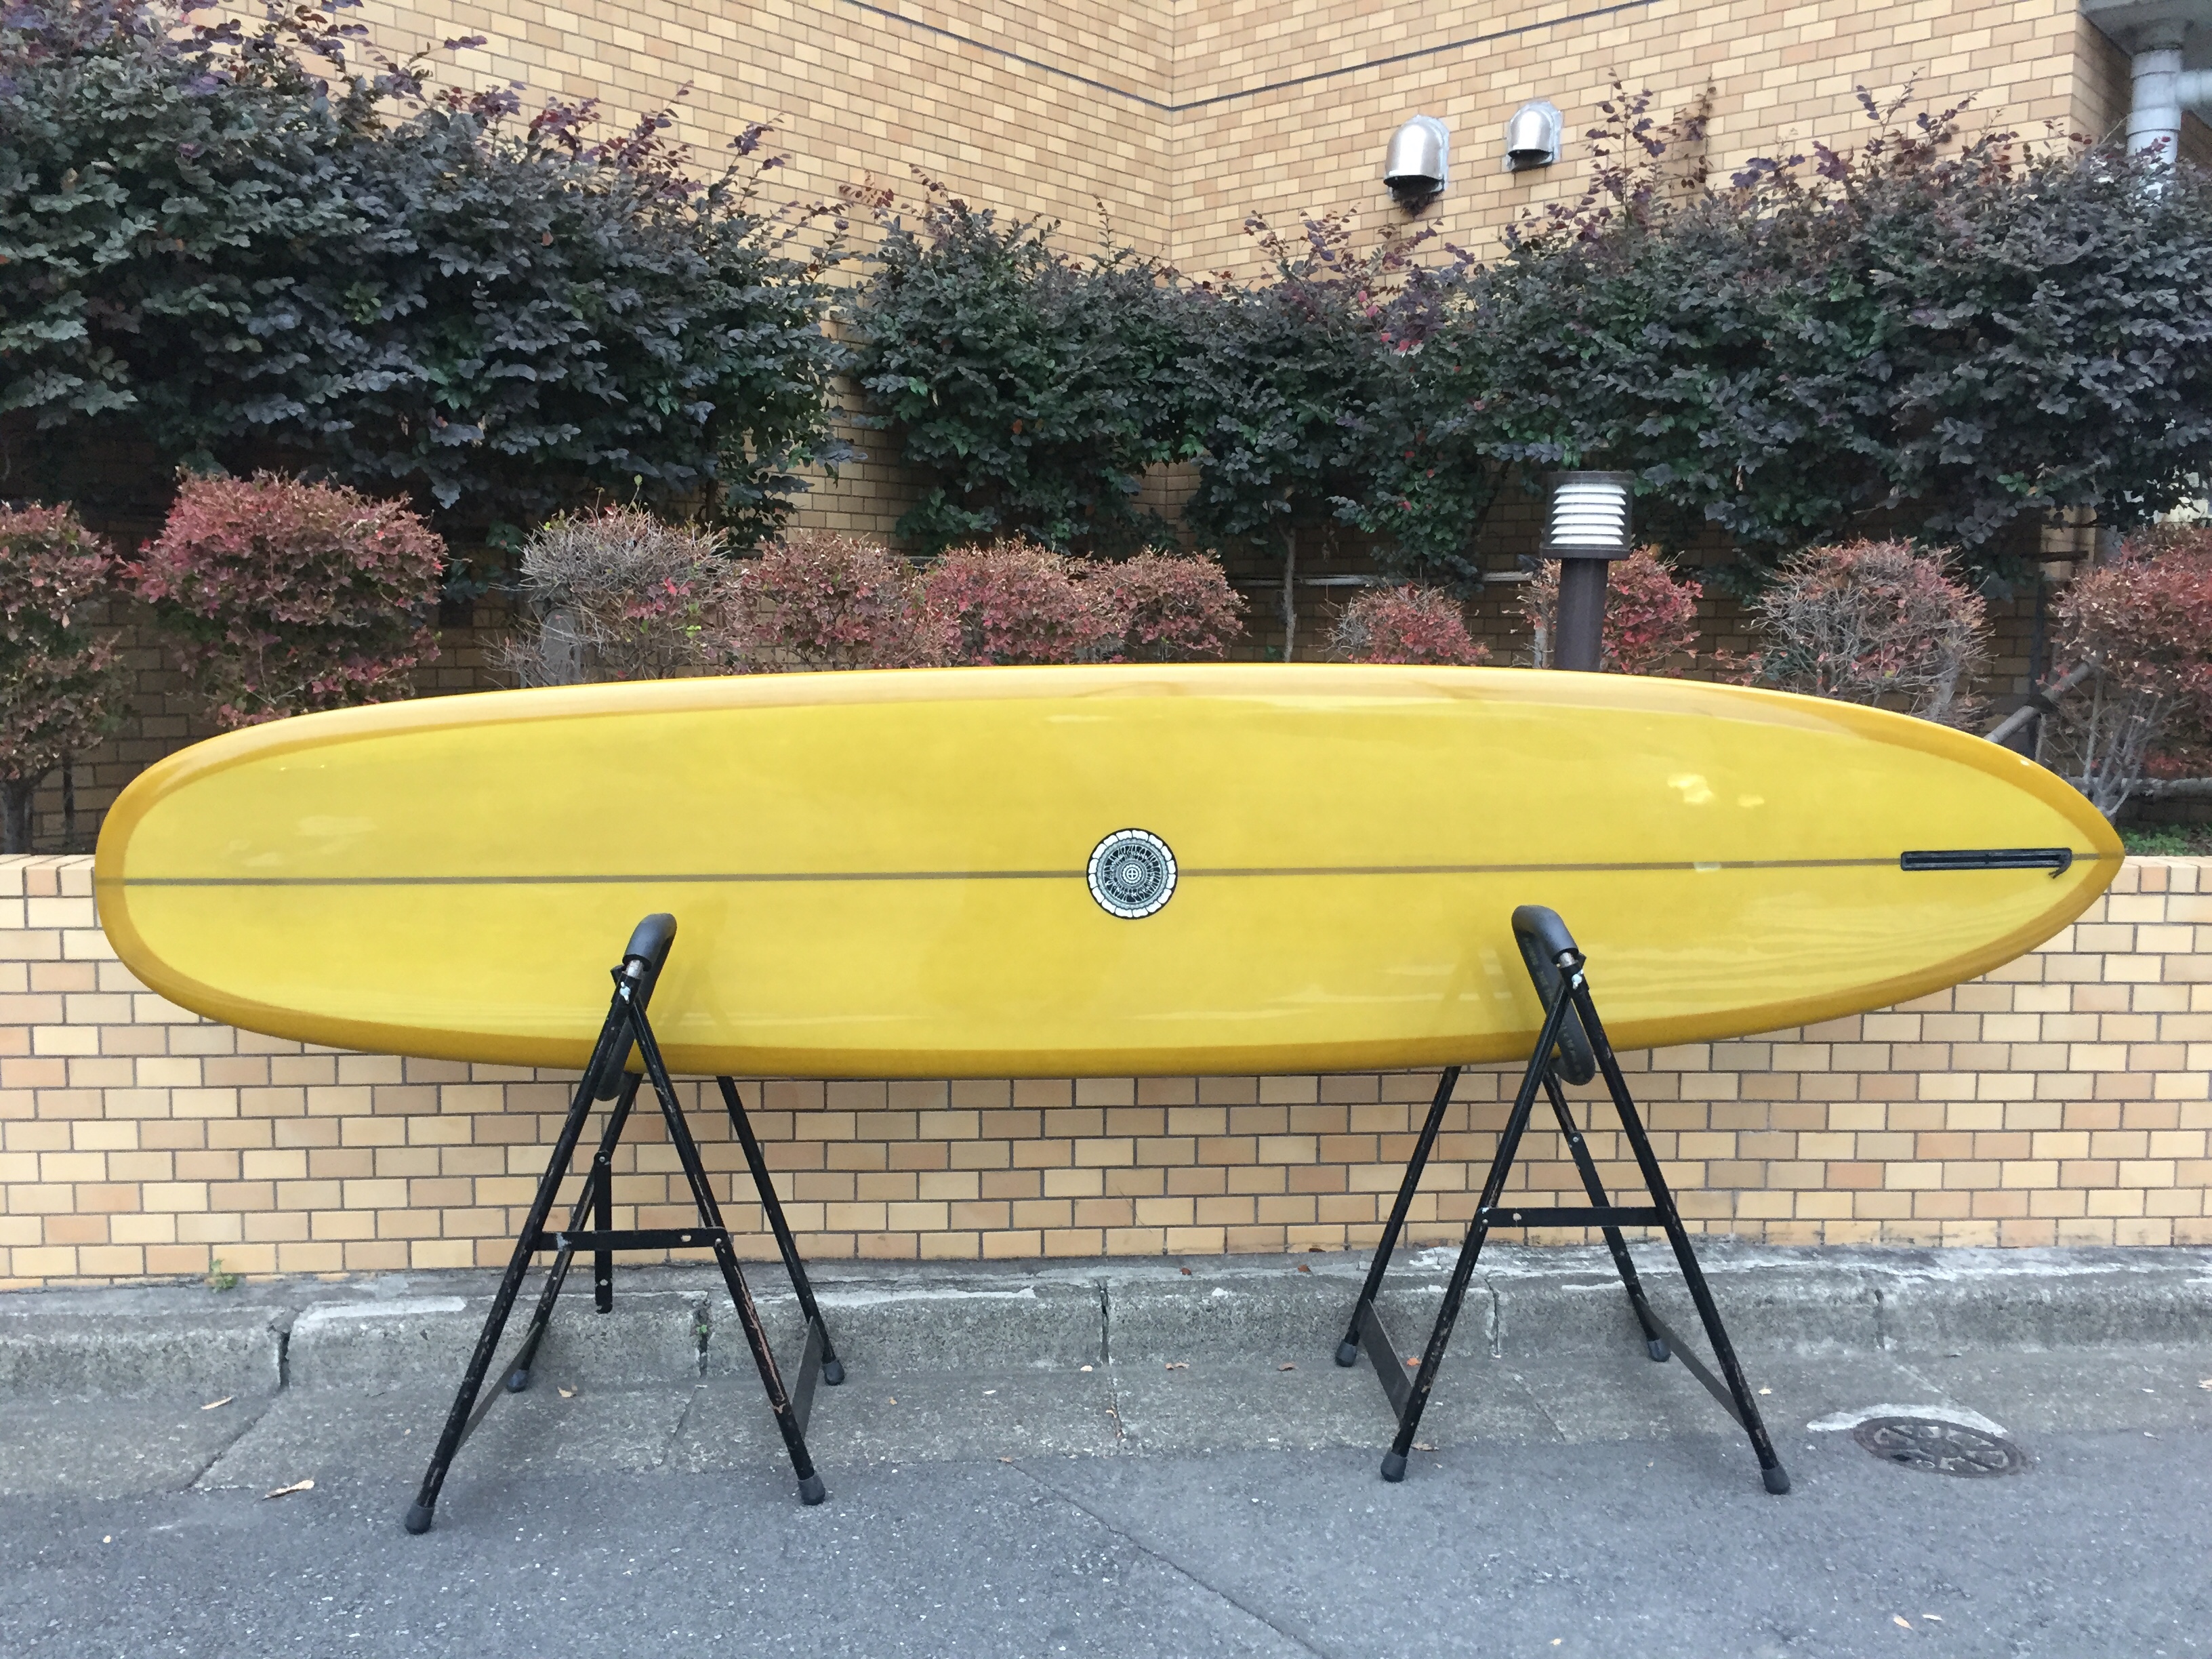 タイラーウォーレン ワンフィンピン 9'5” | Kiaora Surf&Adventure